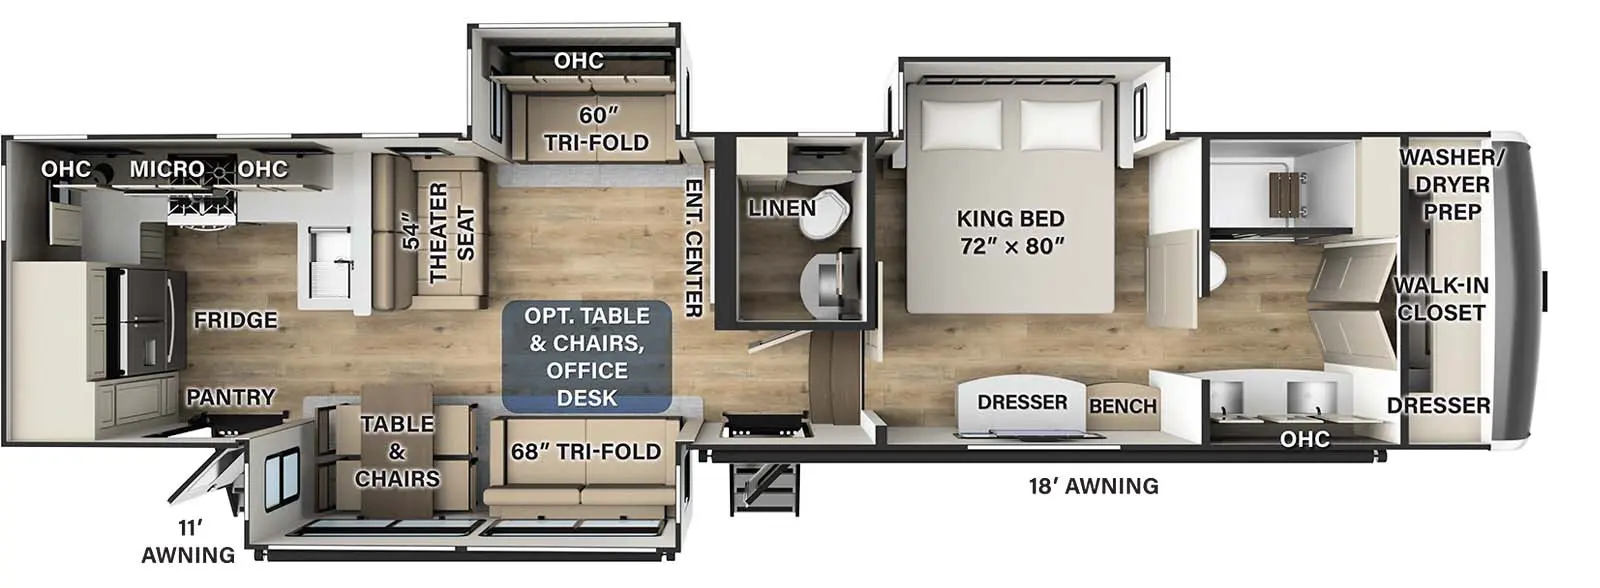 384RK Floorplan Image